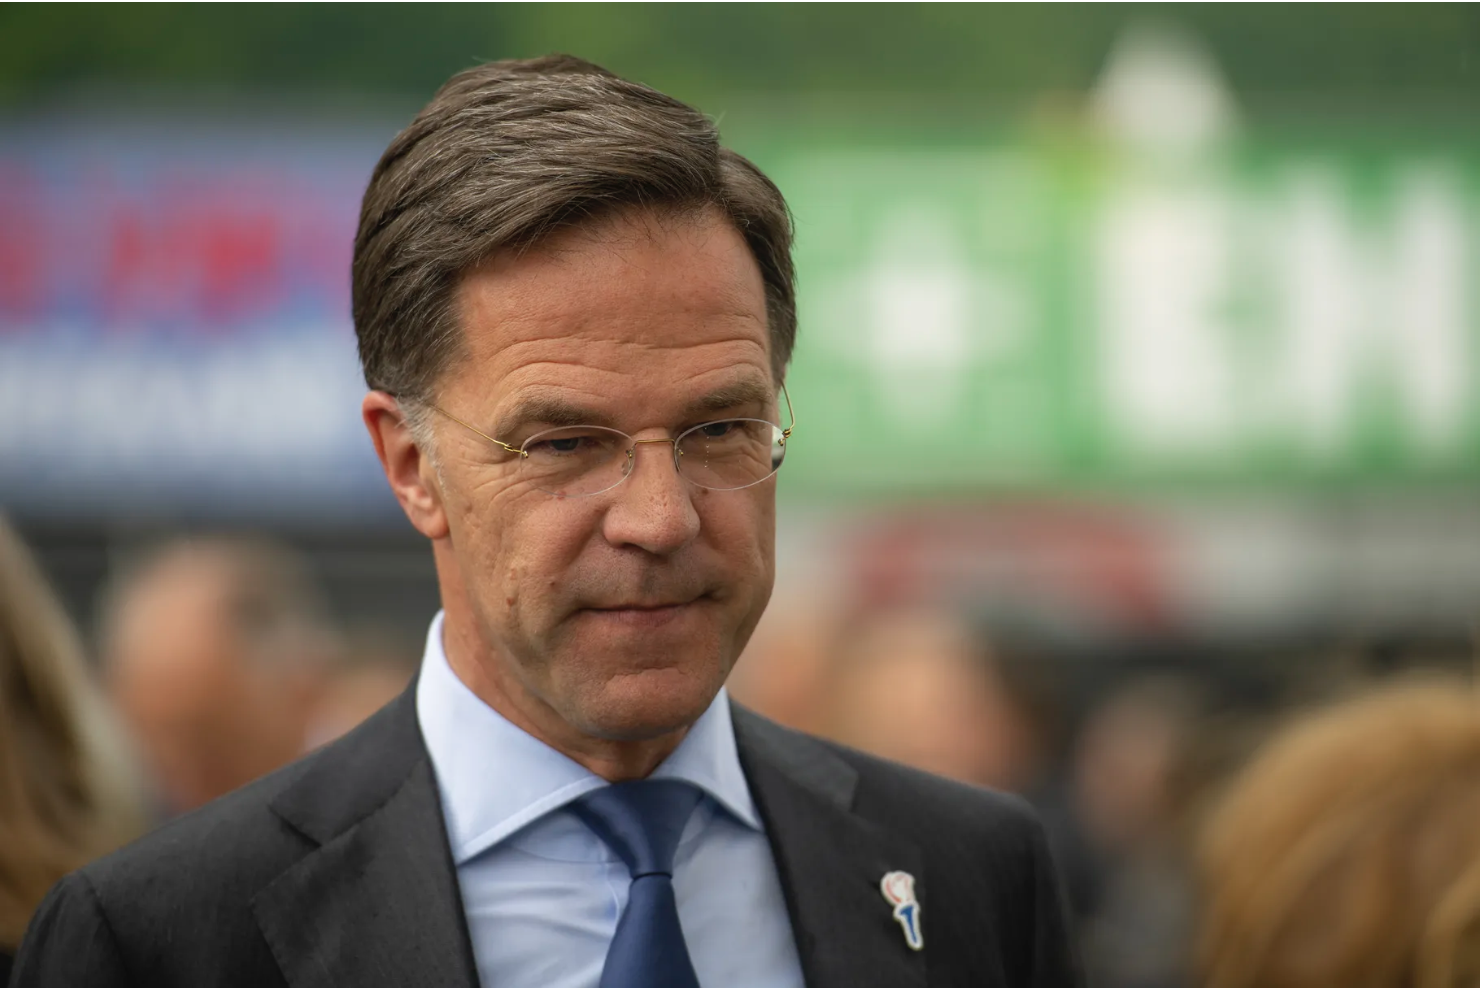 What the Dutch parliament collapse reveals about European migration